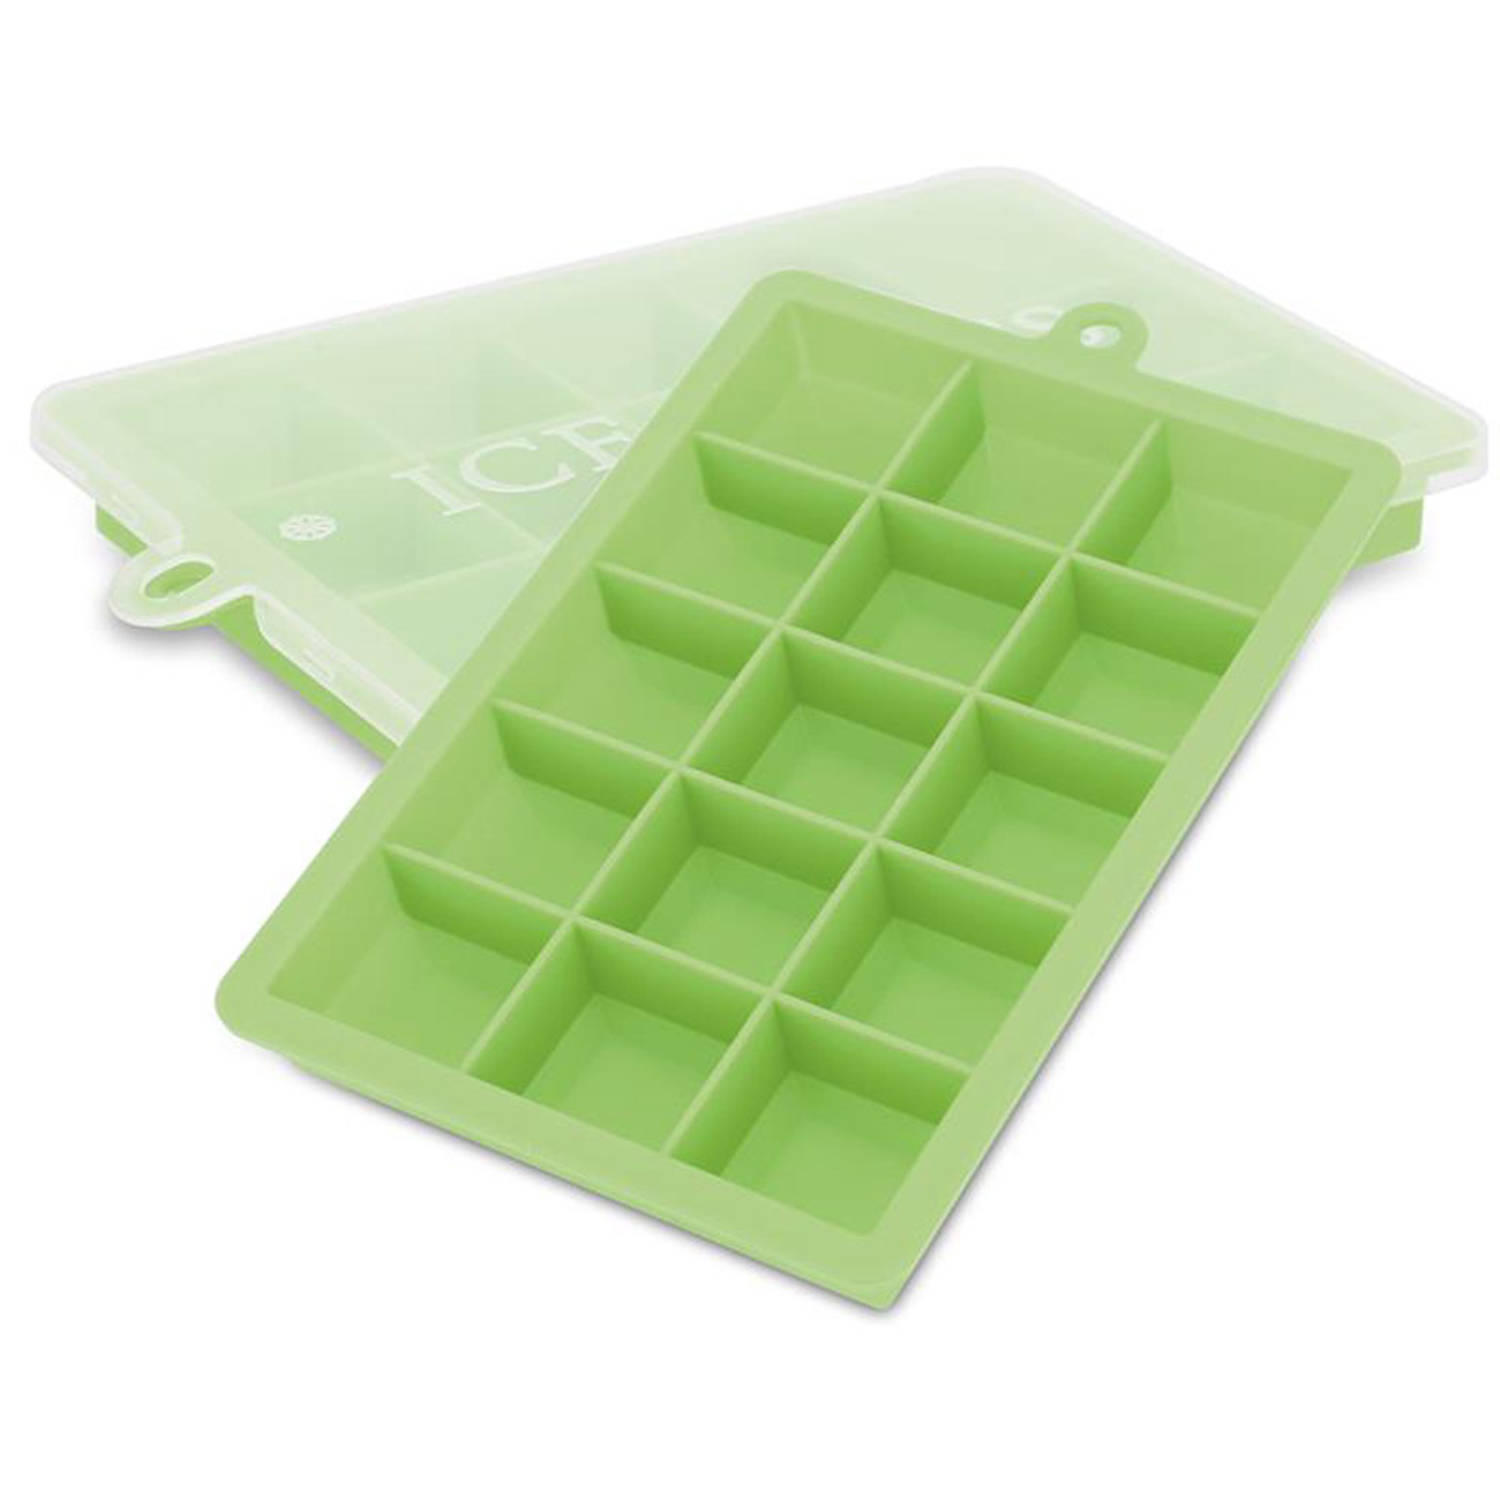 INTIRILIFE 2 x ijsblokjesvormen in groen – set van 2 à 15 vakken ijsblokjes siliconen vormen met deksel – flexibele ijsblokjeshouder afsluitbaar voor ijs, babyvoeding en meer